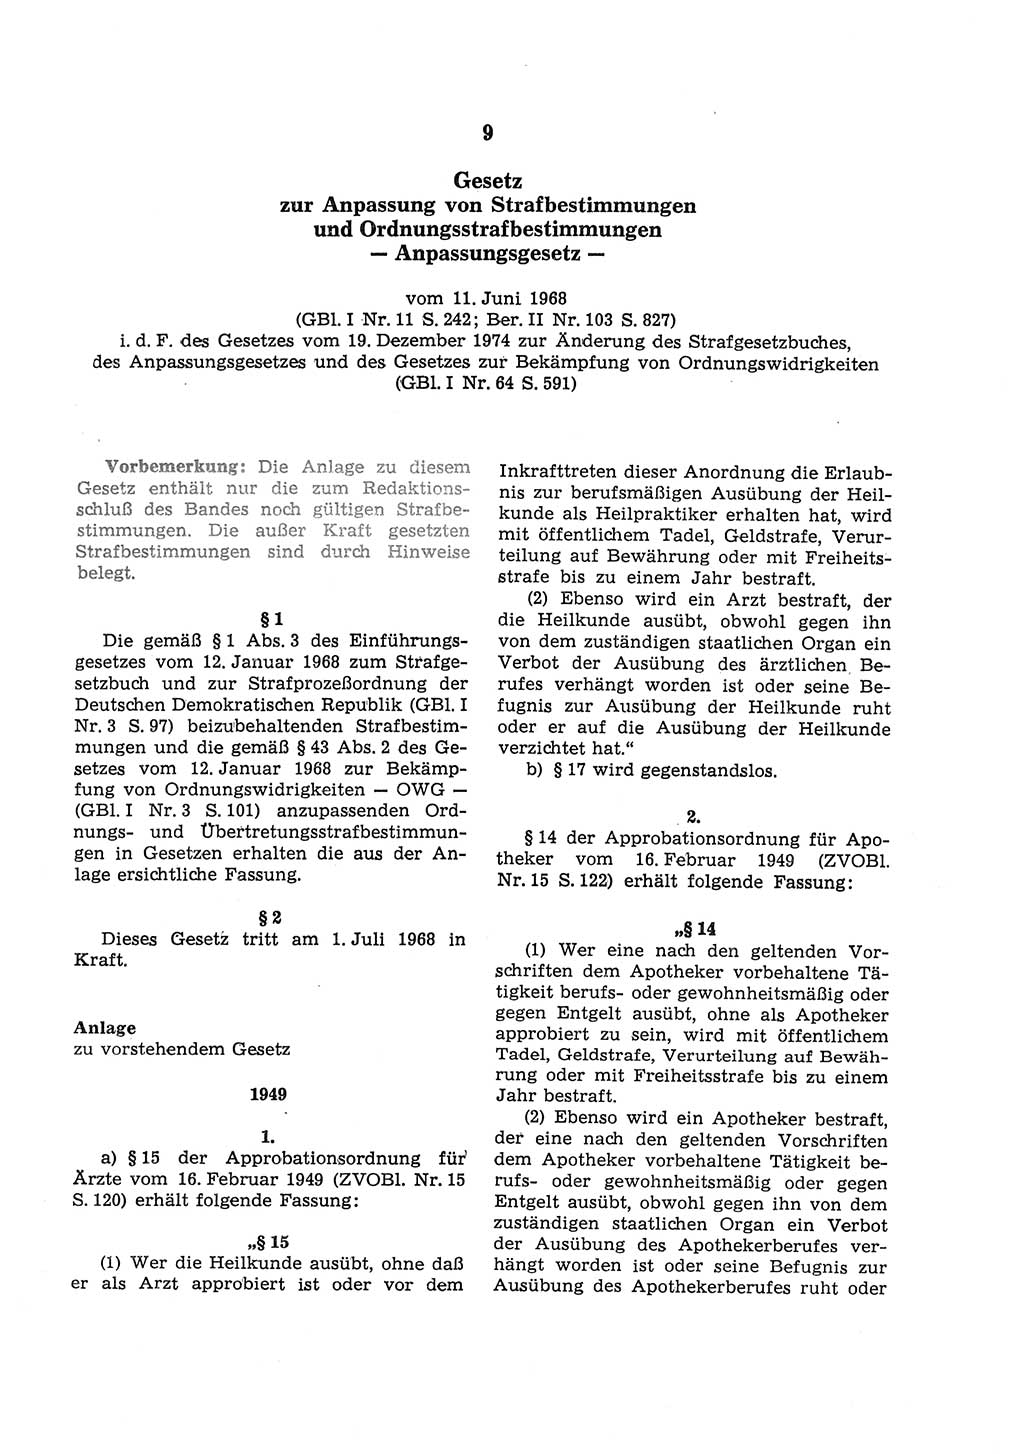 Strafgesetzbuch (StGB) der Deutschen Demokratischen Republik (DDR) und angrenzende Gesetze und Bestimmungen 1975, Seite 127 (StGB DDR Ges. Best. 1975, S. 127)